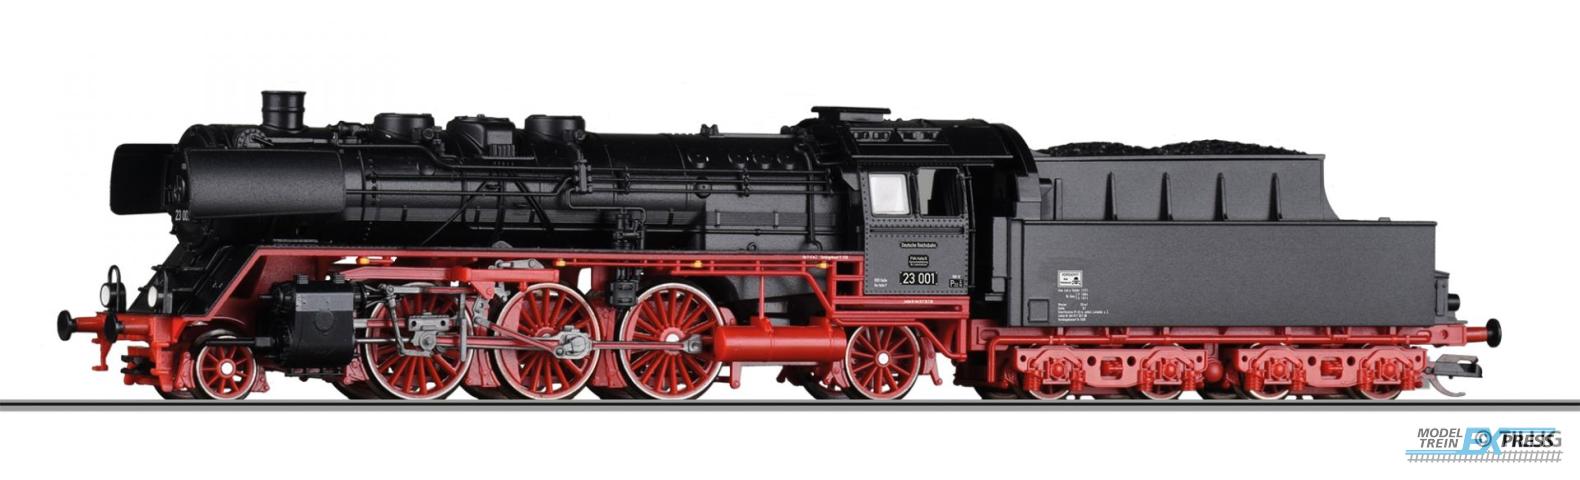 Tillig 2103 Dampflokomotive 23 001 der DR, Ep. III